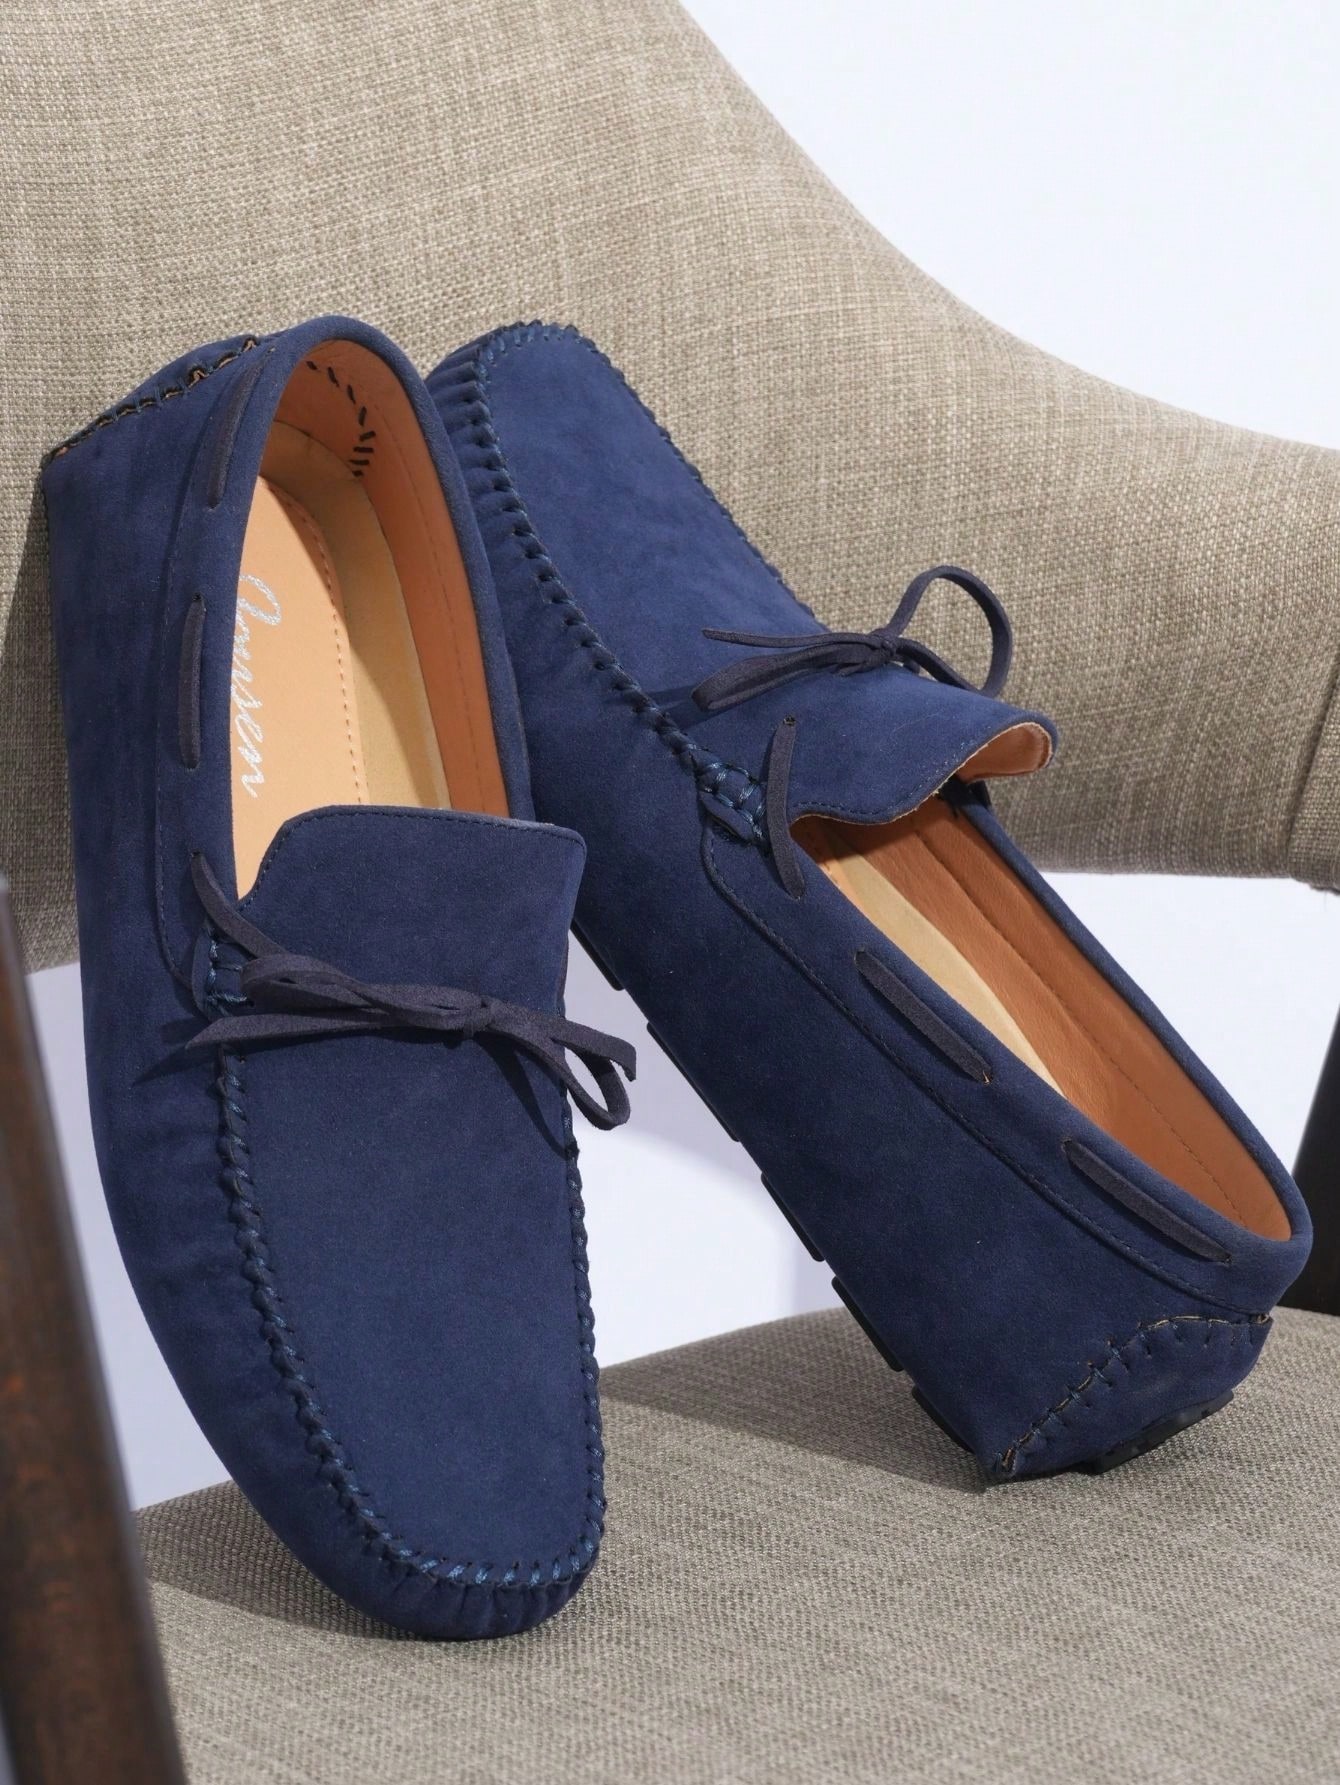 SHOESMALL, amy3056-темно-синий мужские парусиновые туфли повседневные лоферы без застежки дышащие плоская подошва для вождения прогулок кроссовки обувь для доски н